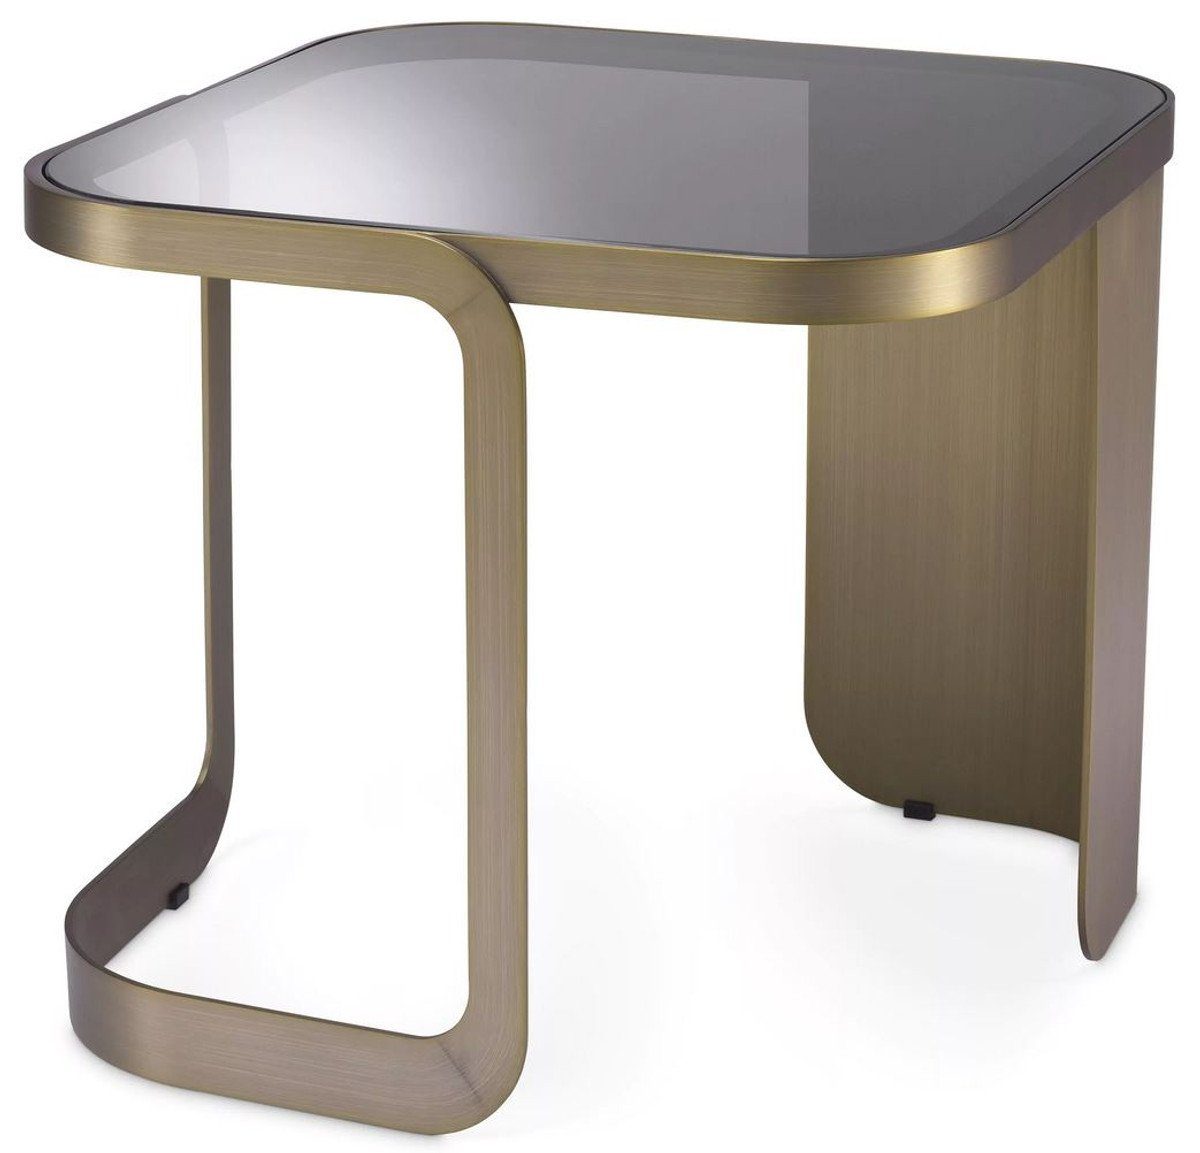 Casa Padrino Beistelltisch Luxus Beistelltisch Messingfarben / Grau 49,5 x 49,5 x H. 45 cm - Edelstahl Tisch mit Glasplatte - Möbel - Luxus Kollektion